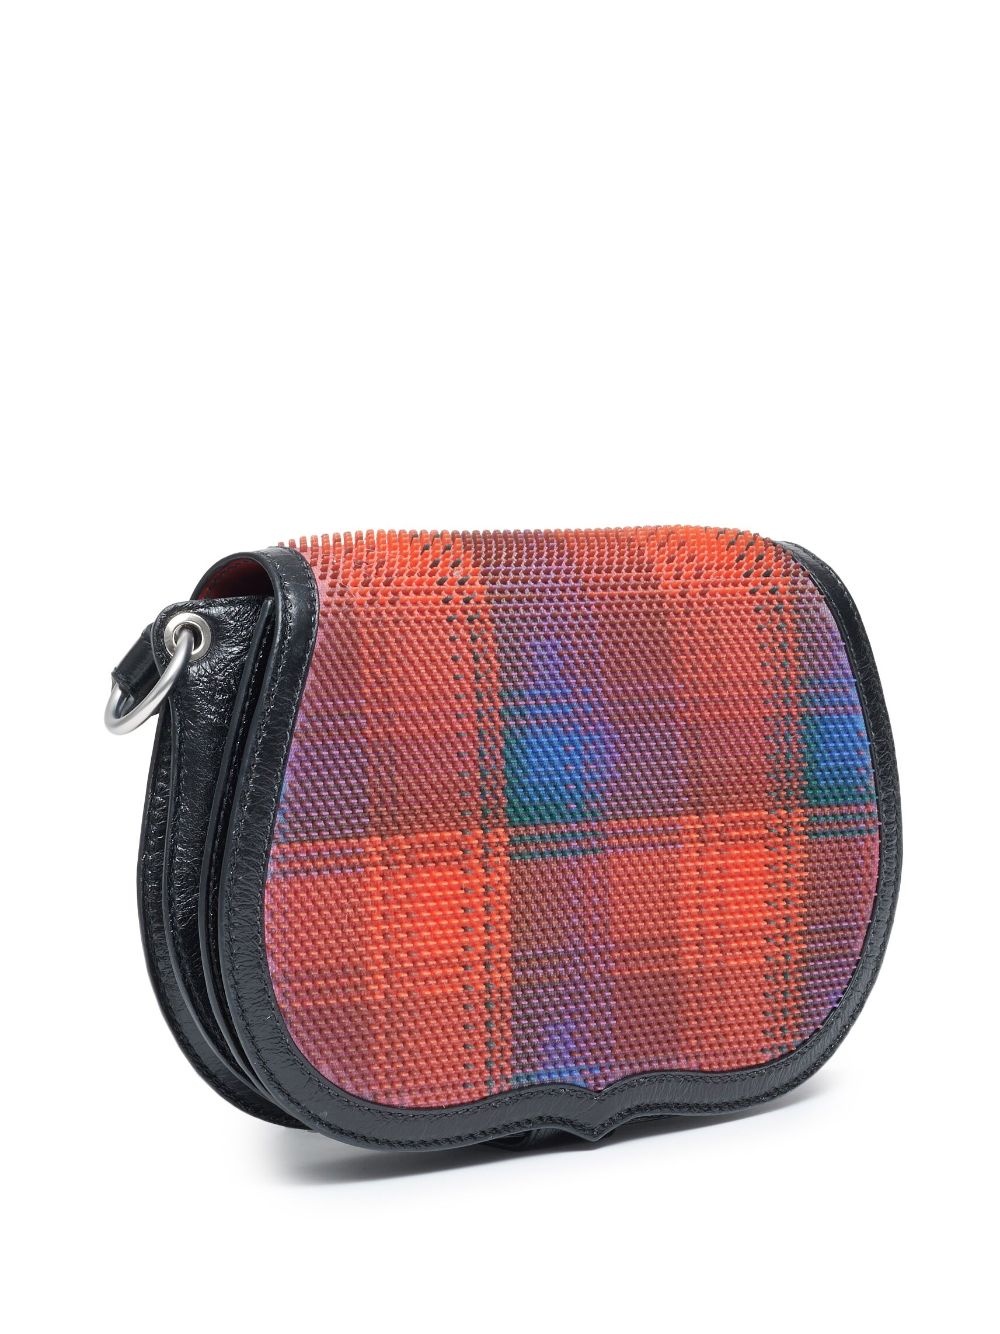 grid-pattern leather shoulder bag - 5